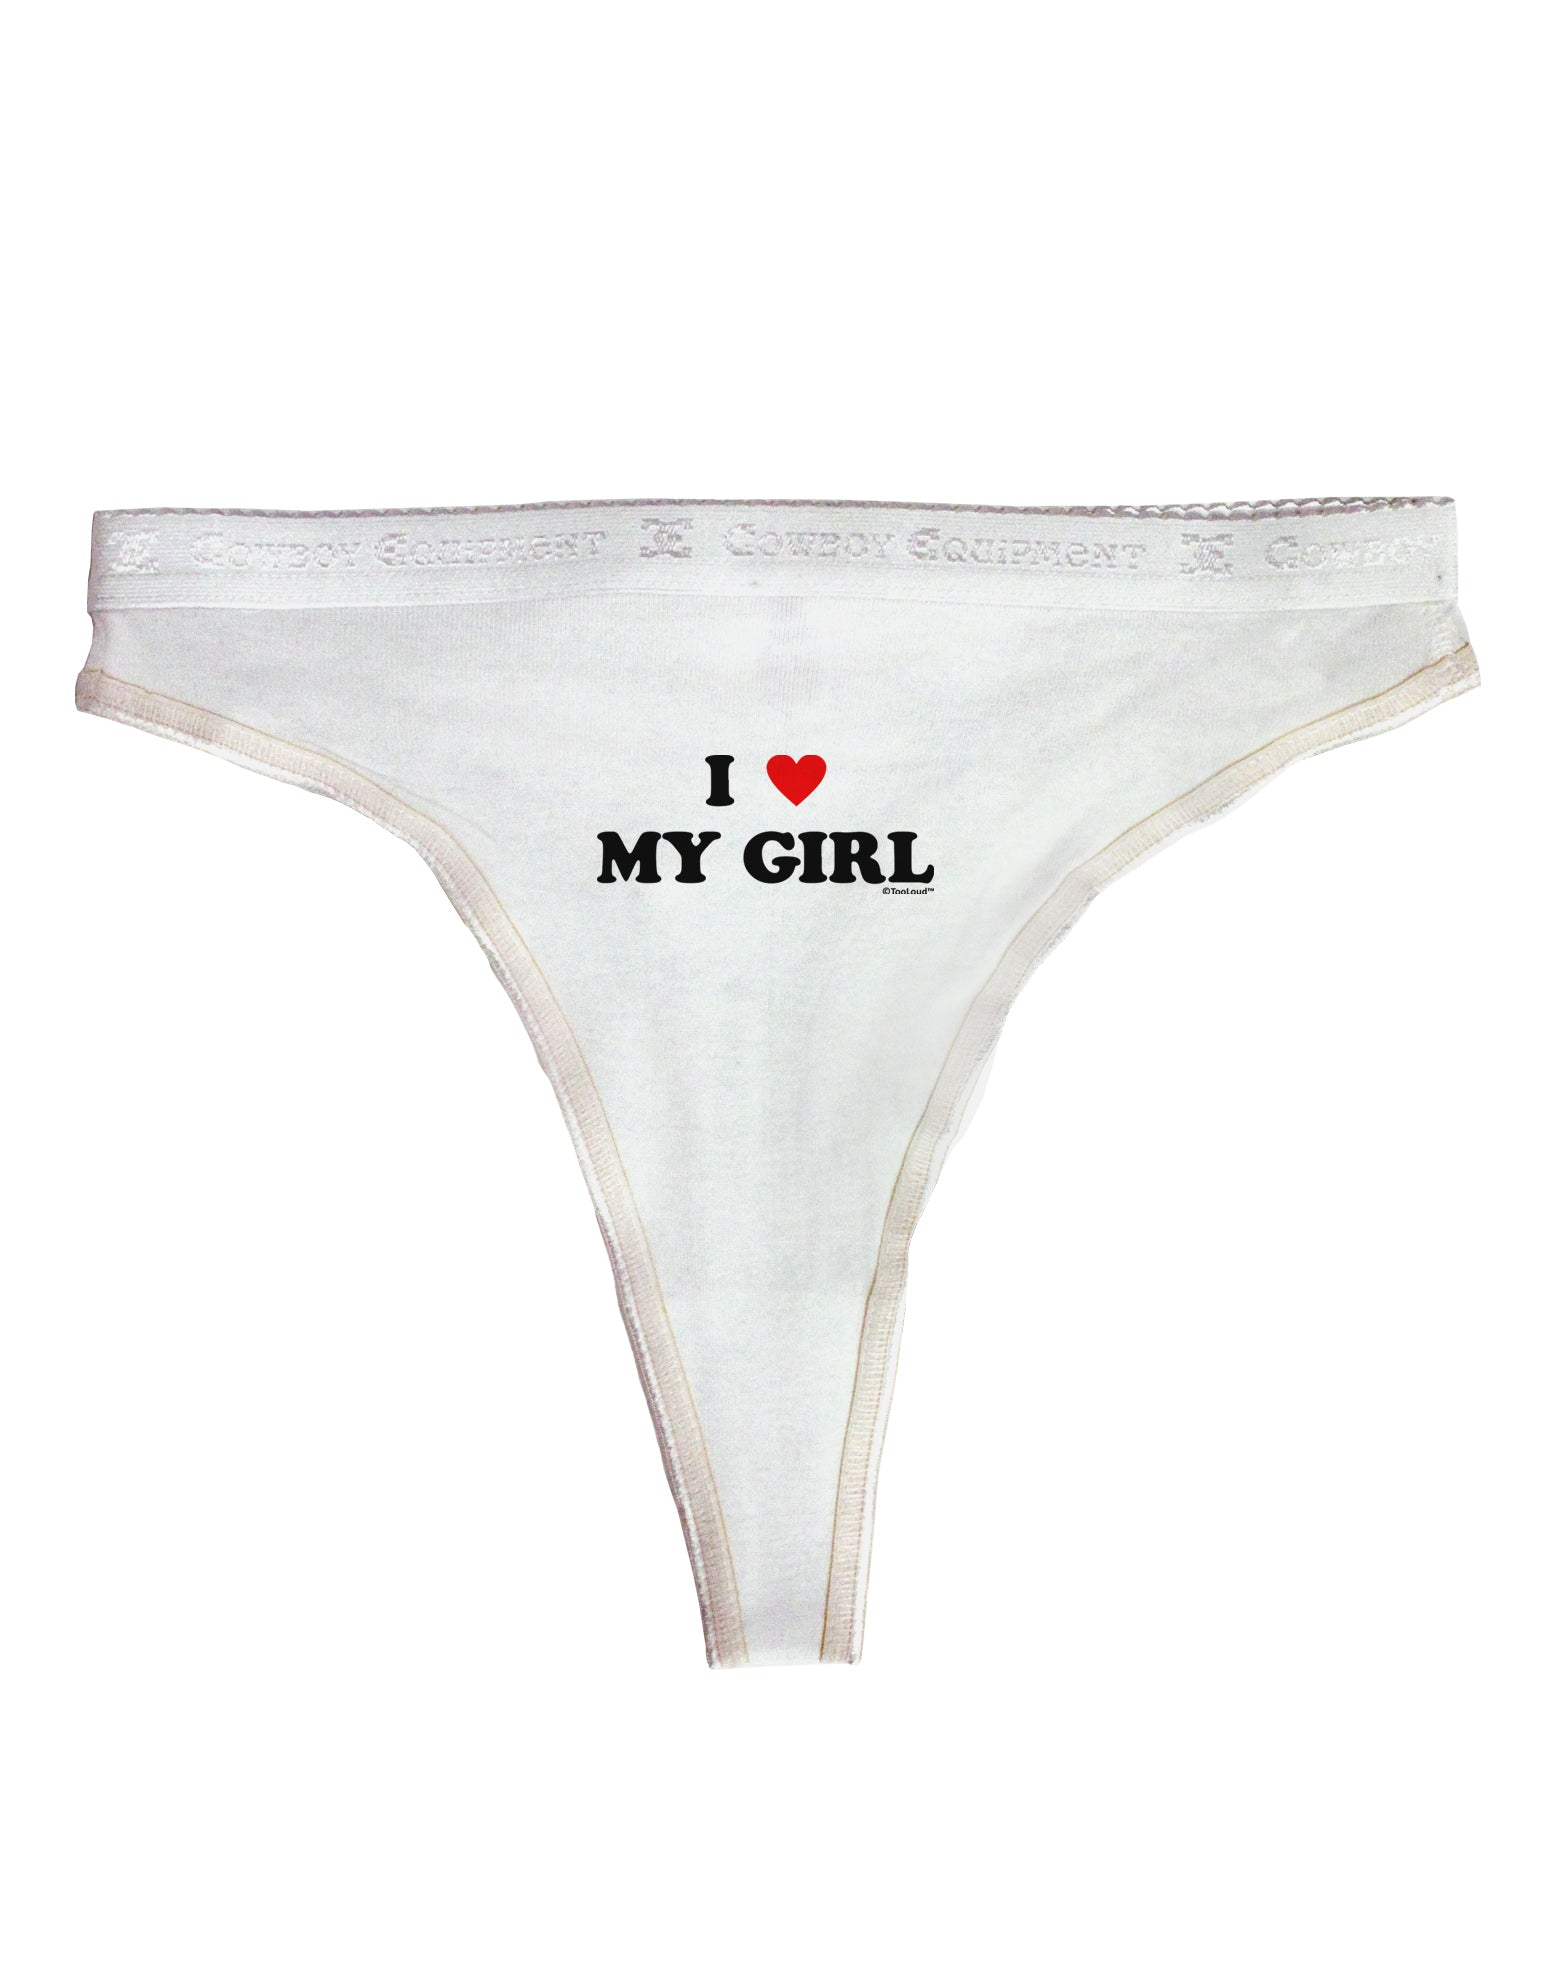 I-love-my-girlfriend underwear Gifts, Unique Designs